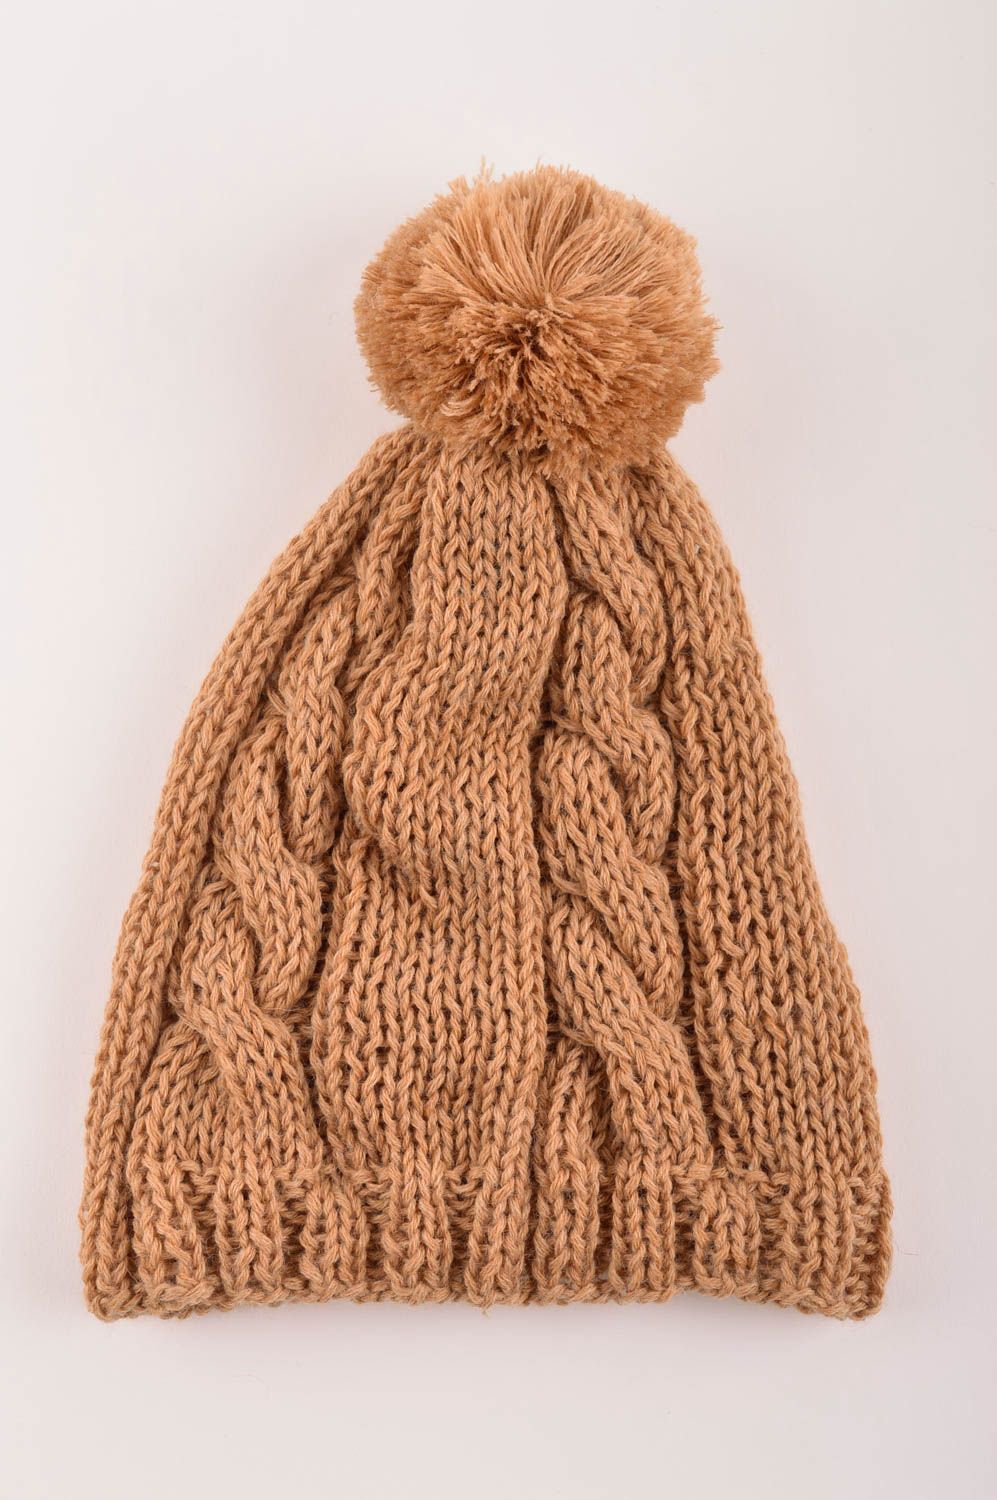 Вязаная шапка ручной работы зимняя шапка для девочки вязаная шапочка красивая фото 5